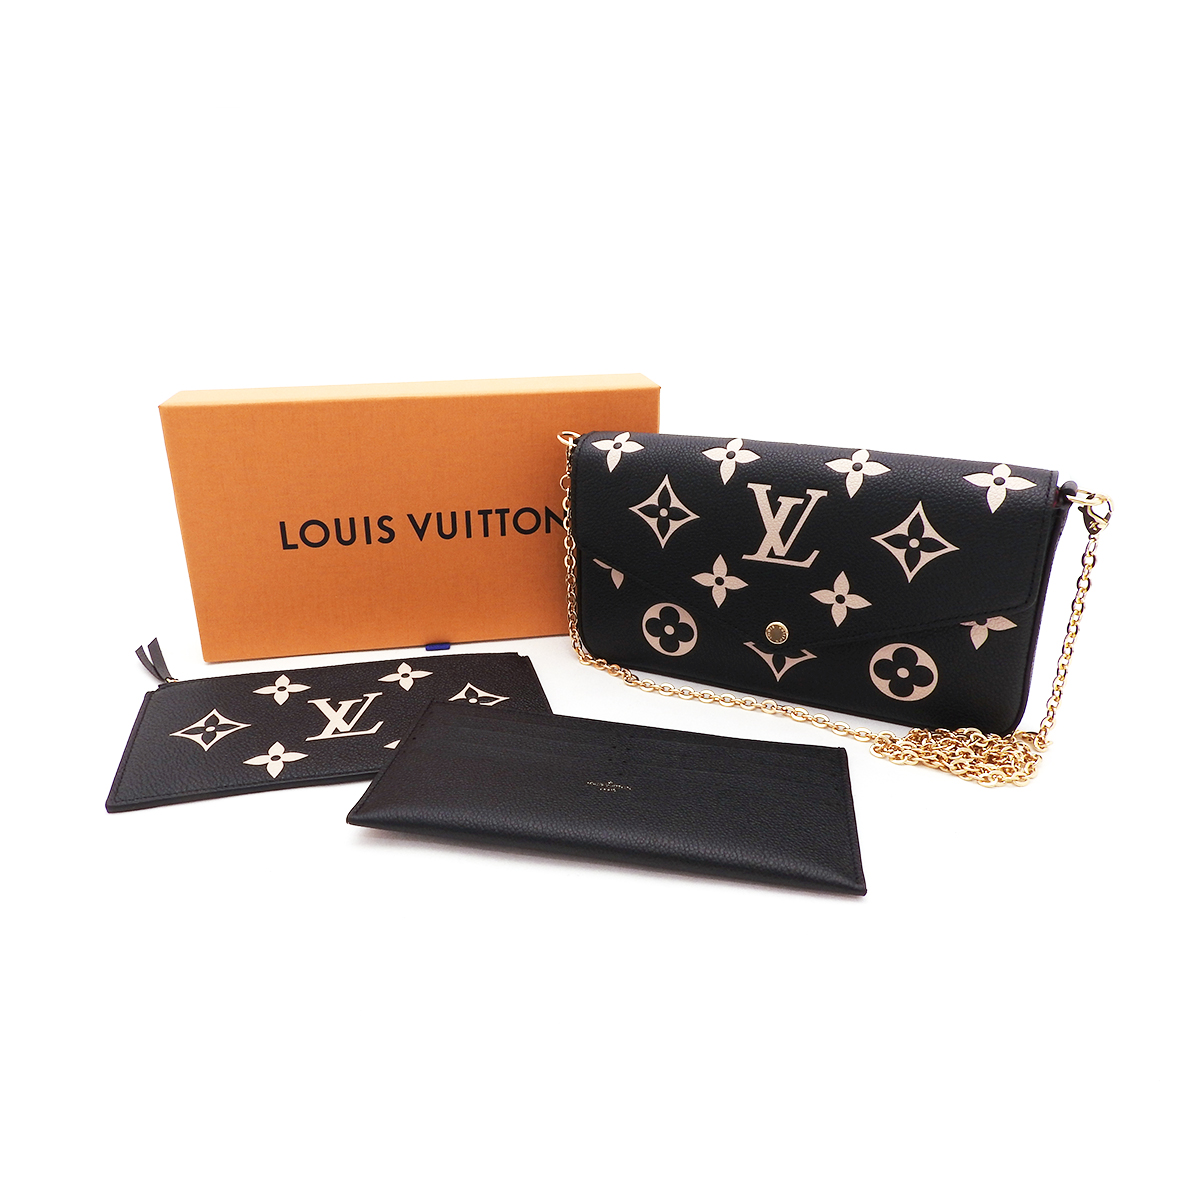 ルイヴィトン(Louis Vuitton) ポシェット・フェリシー M80482 ICチップ内蔵 ブラックベージュ